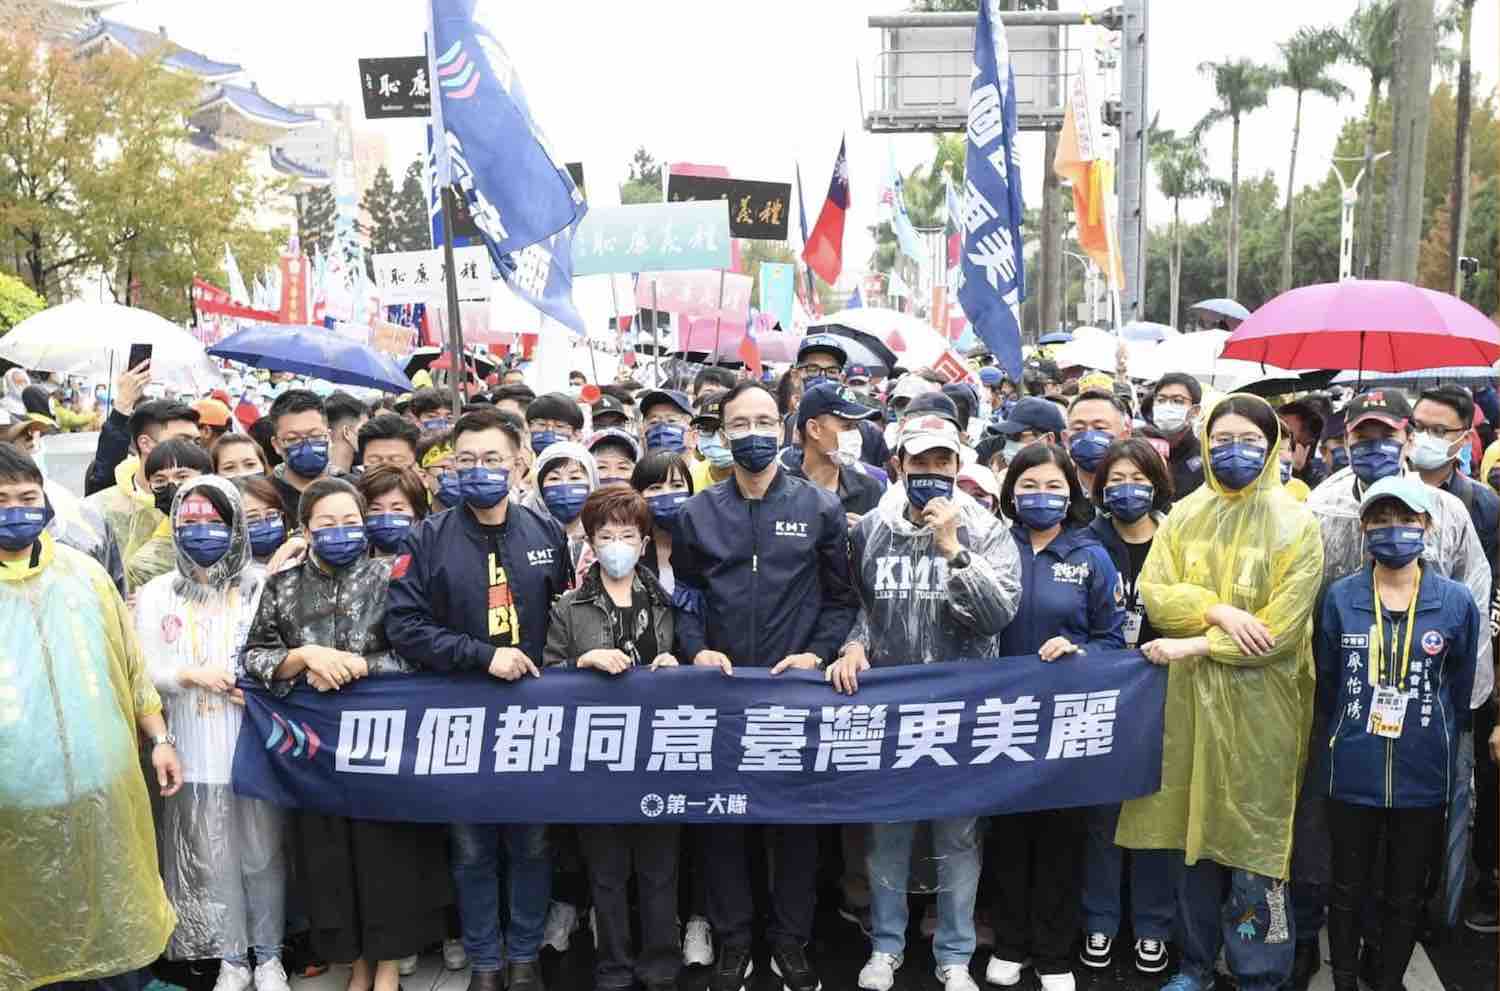 國民黨黨主席朱立倫發起「四個都同意、台灣更美麗」的四大公投造勢